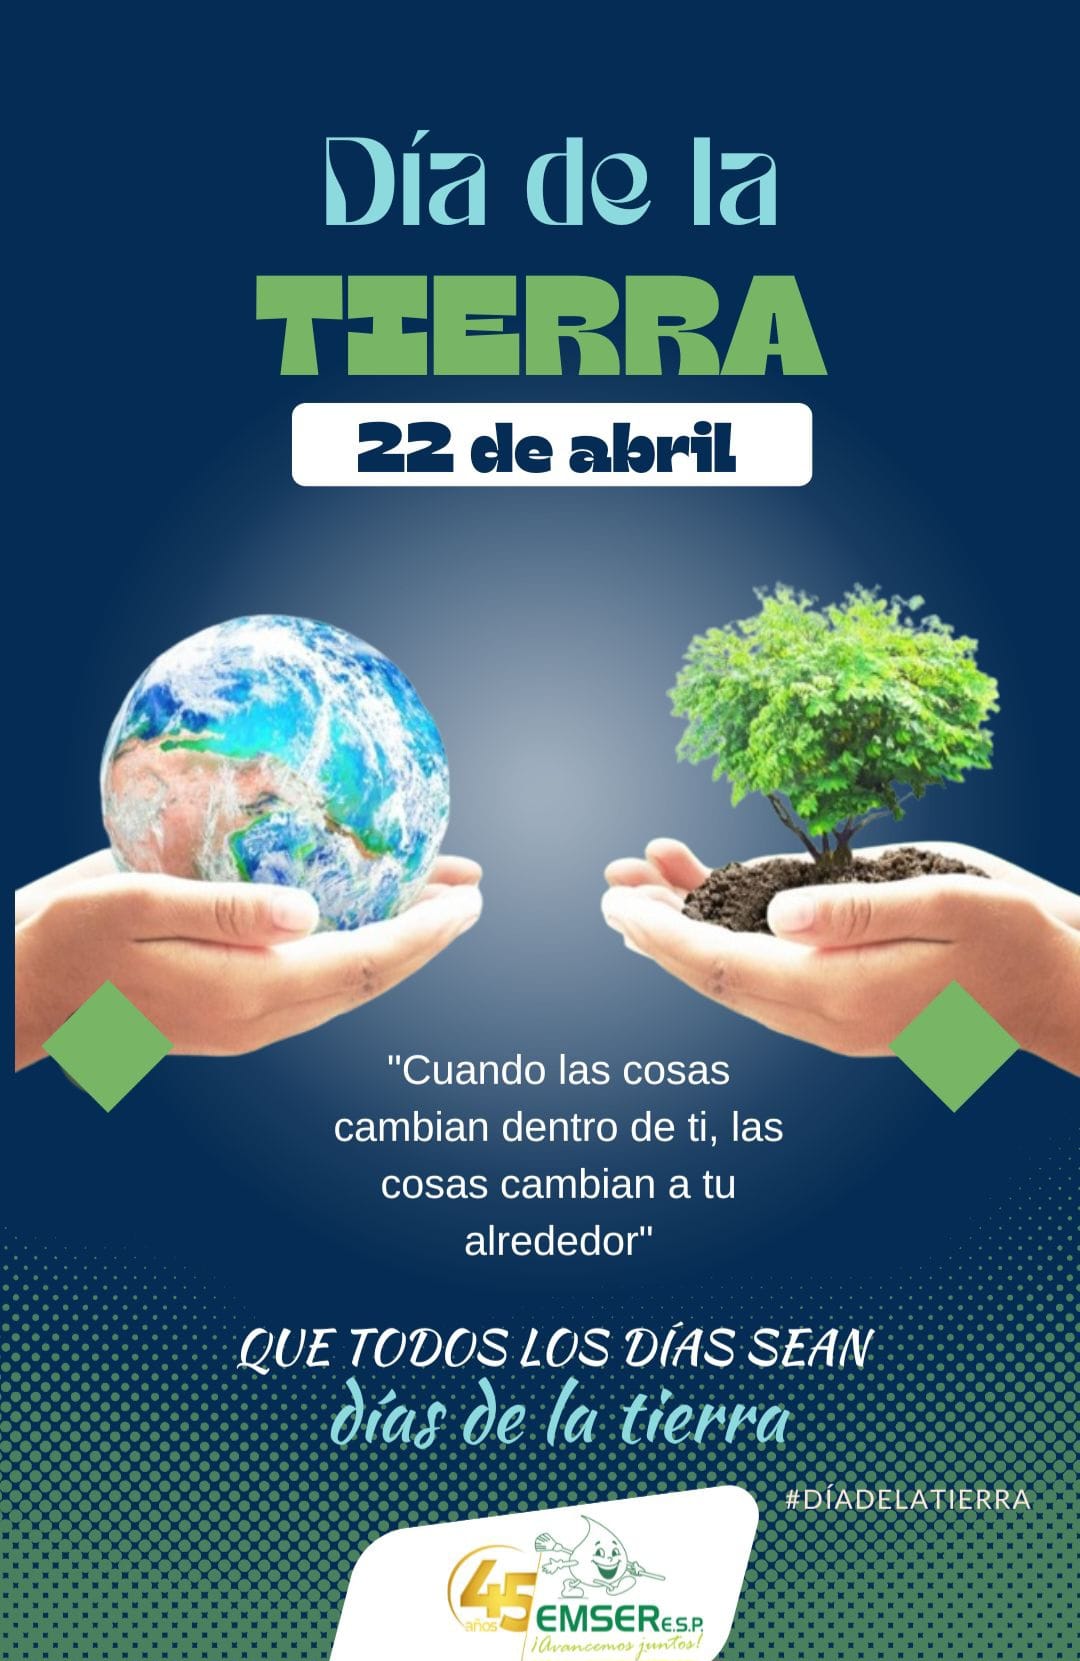 Emser E.S.P. Celebra el Día de la Tierra: Compromiso y Esperanza Renovada